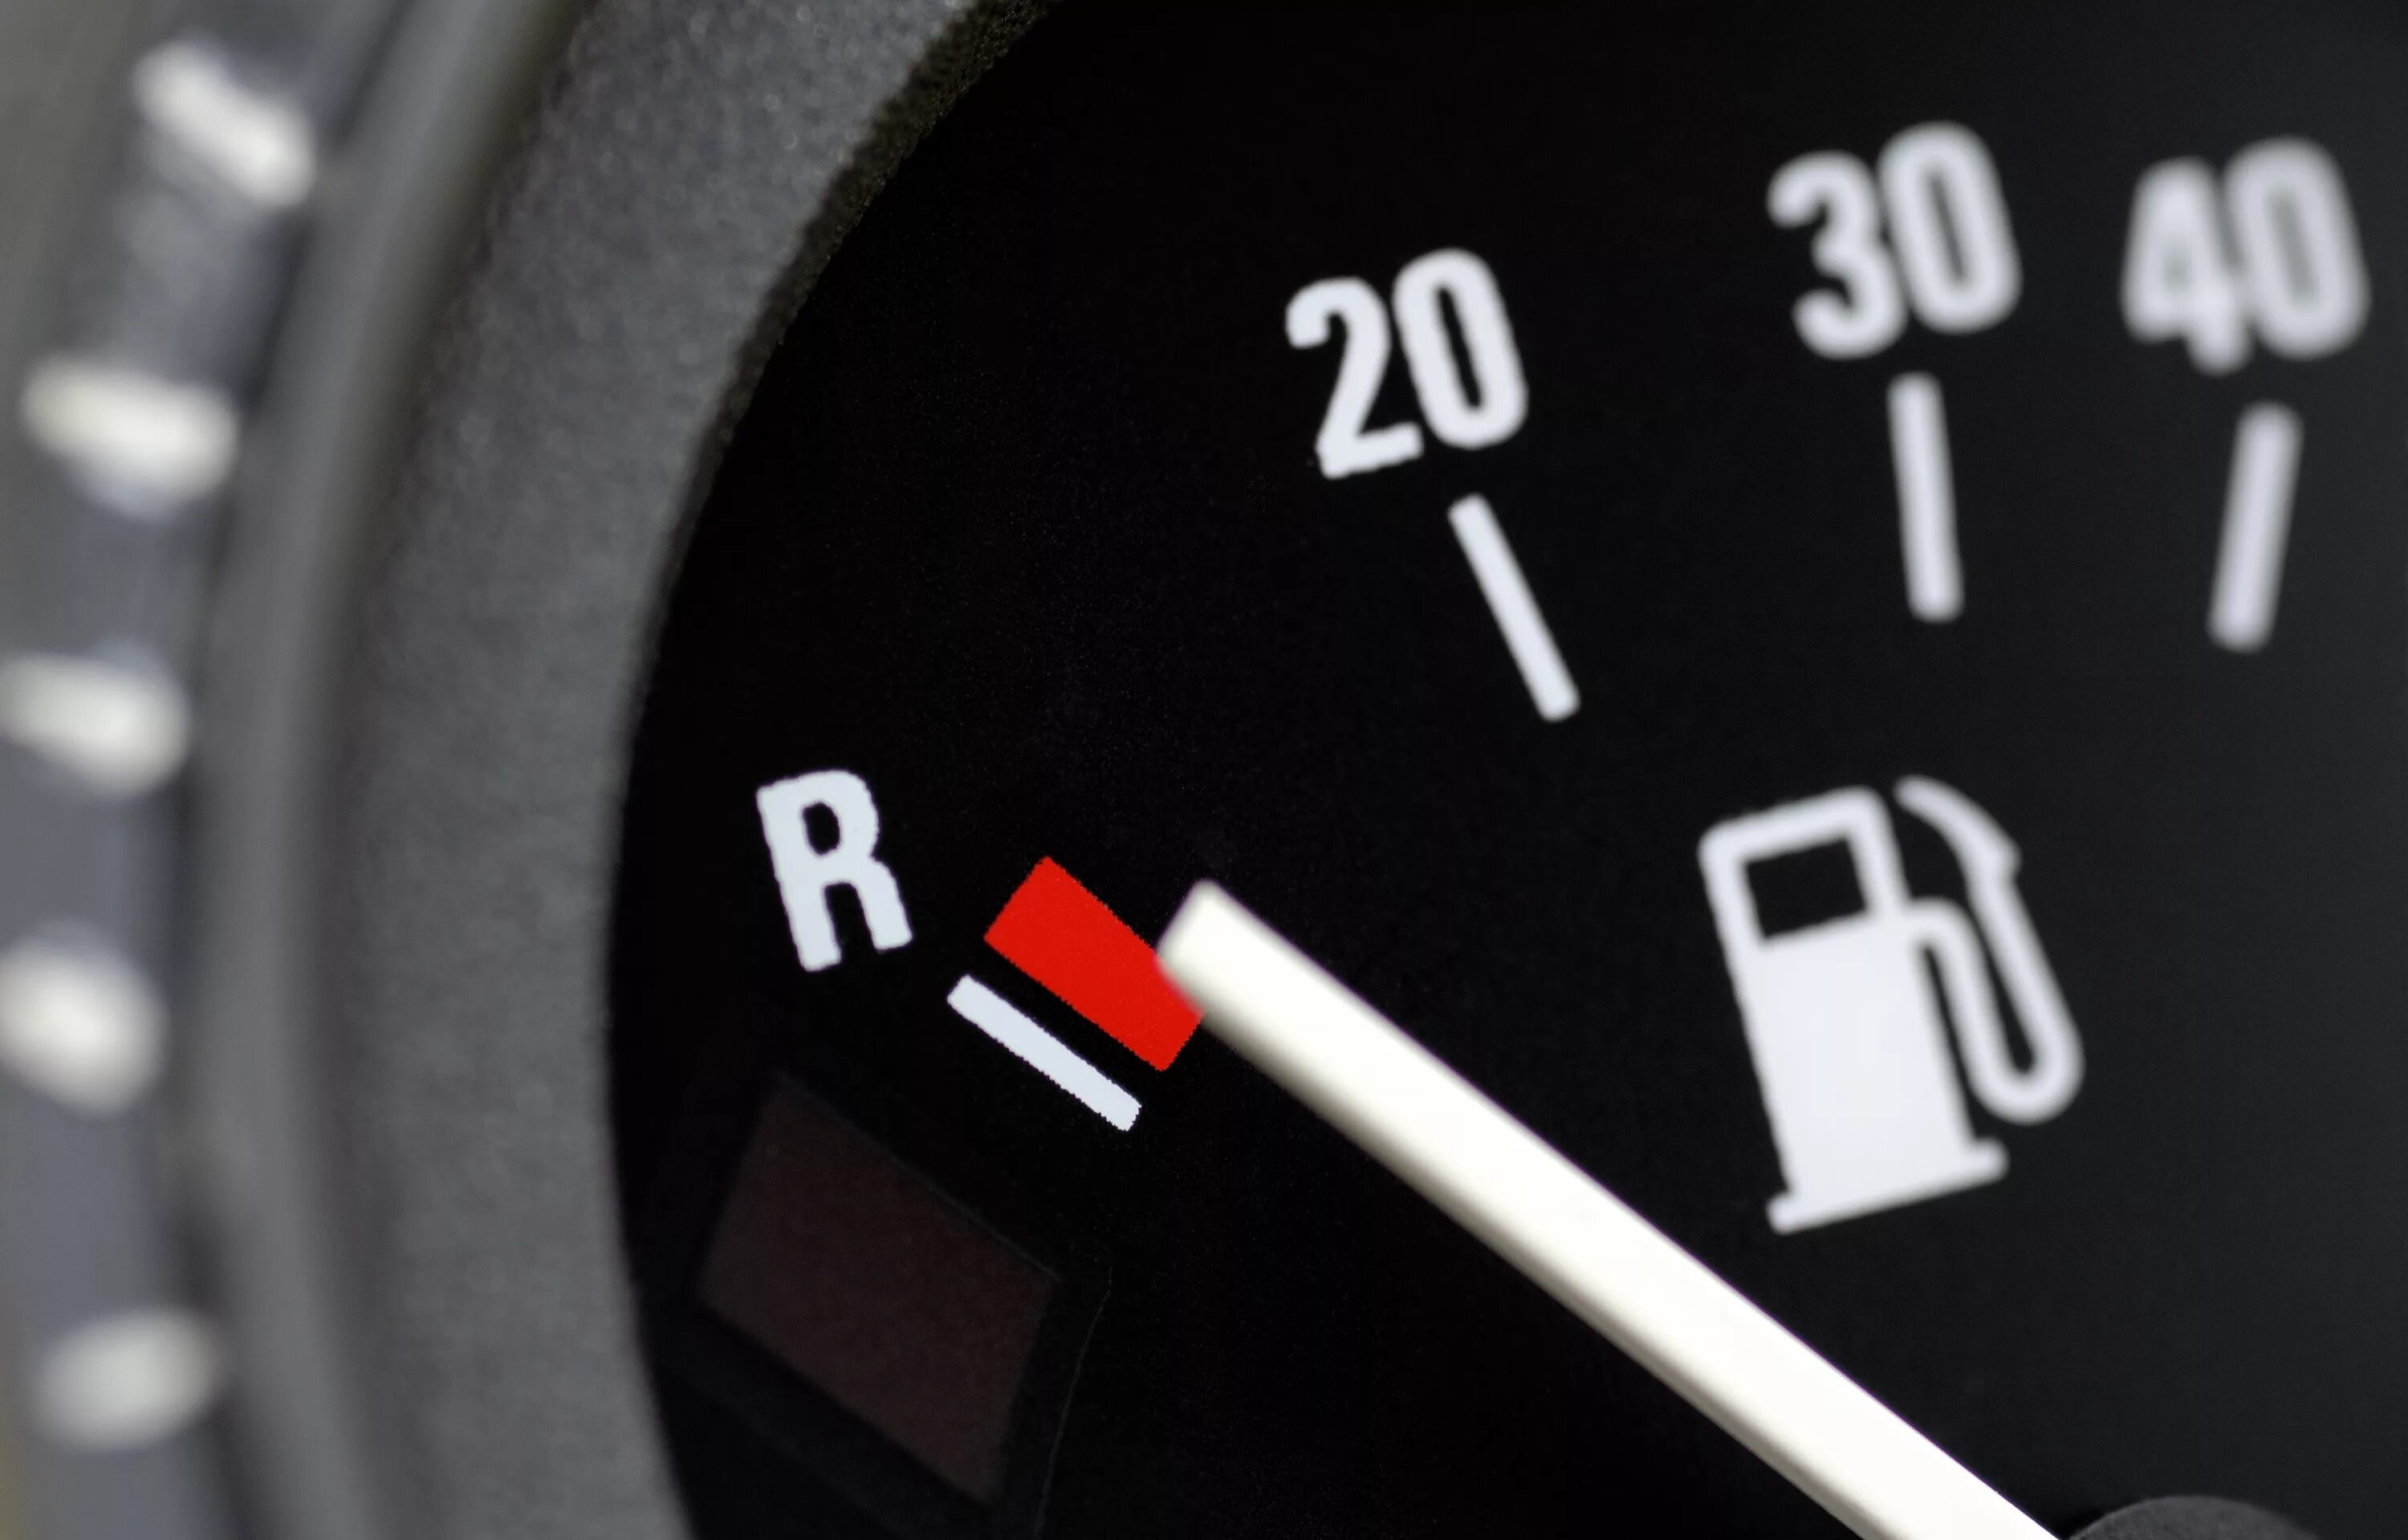 Снижение расхода топлива автомобиля. Экономия топлива на автомобиле. Контроль уровня топлива. Показатель бензина в машине.